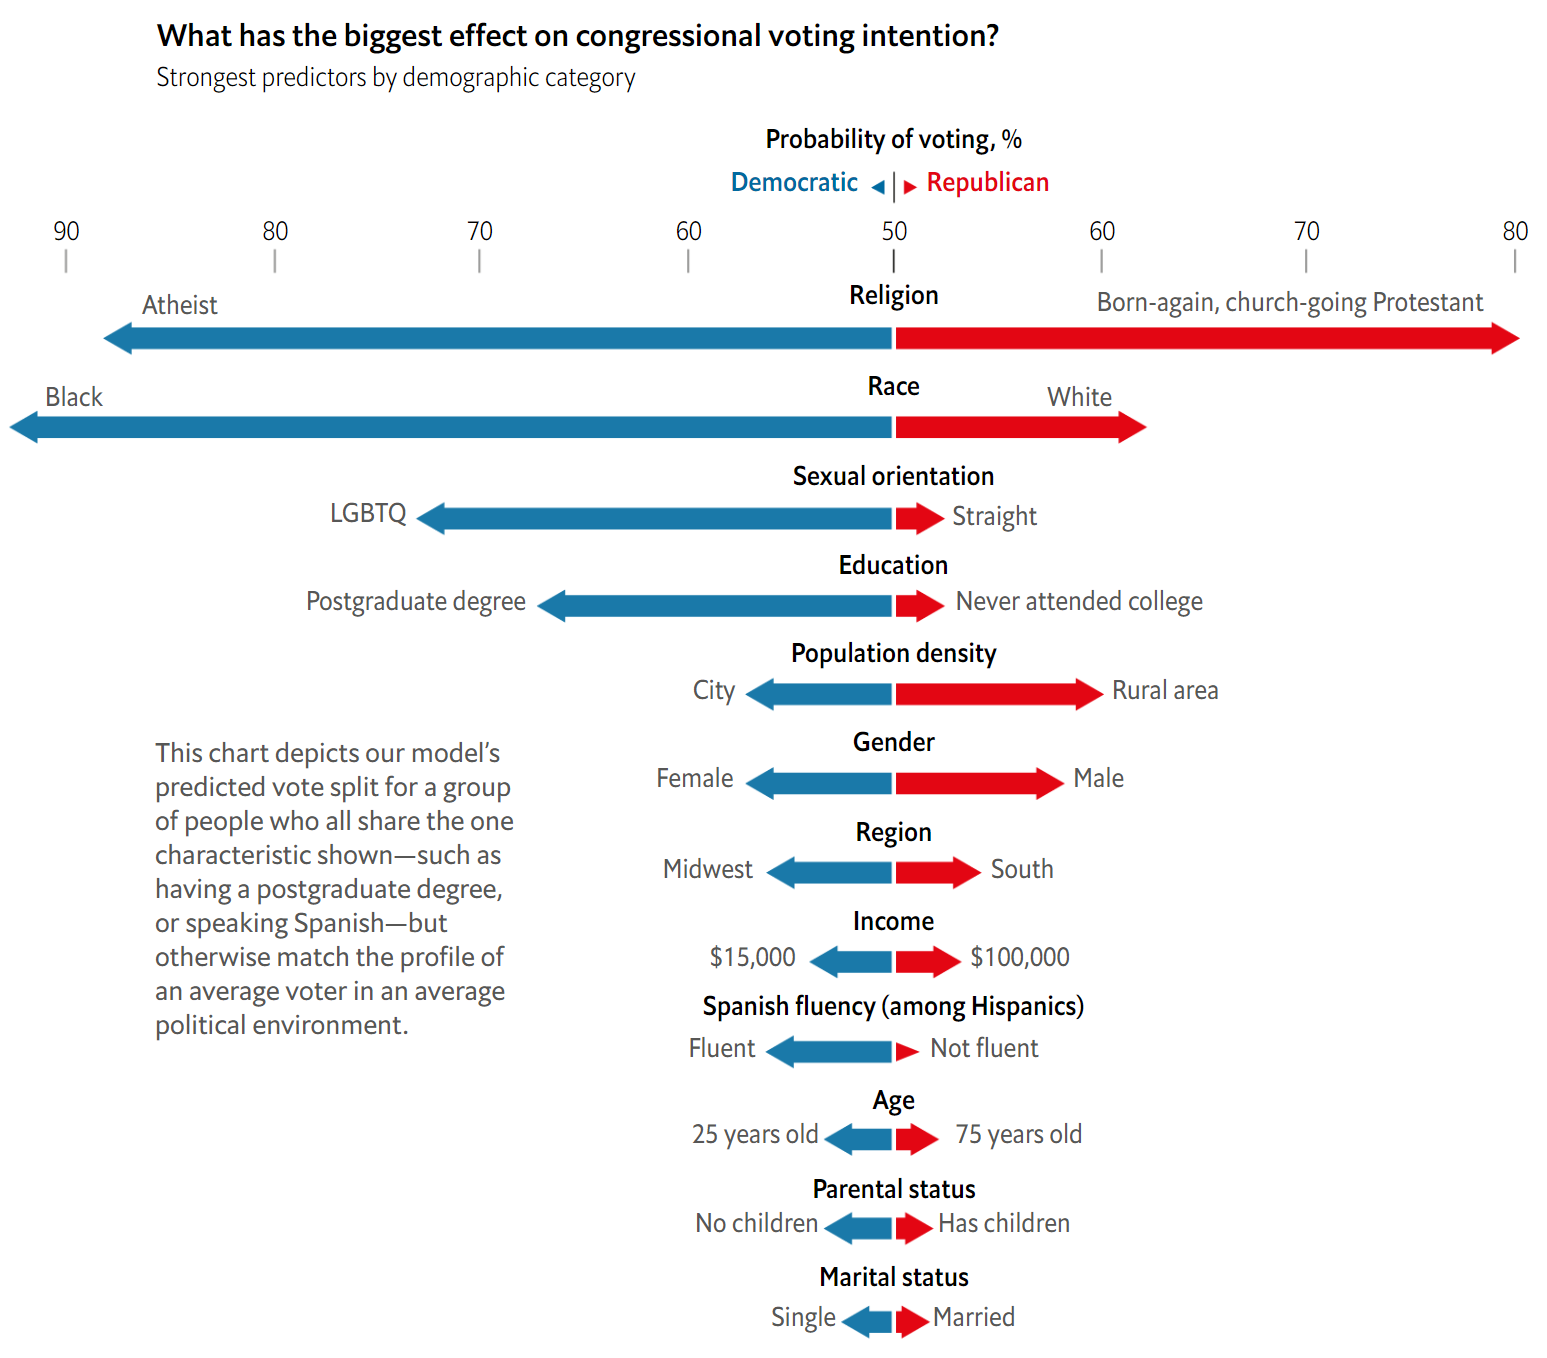 미국 의회 투표 의사 결정에 가장 큰 영향을 미치는 것은 무엇일까? - 기준 항목별(범주형 변수) 투표 가능 정당 비중 비교